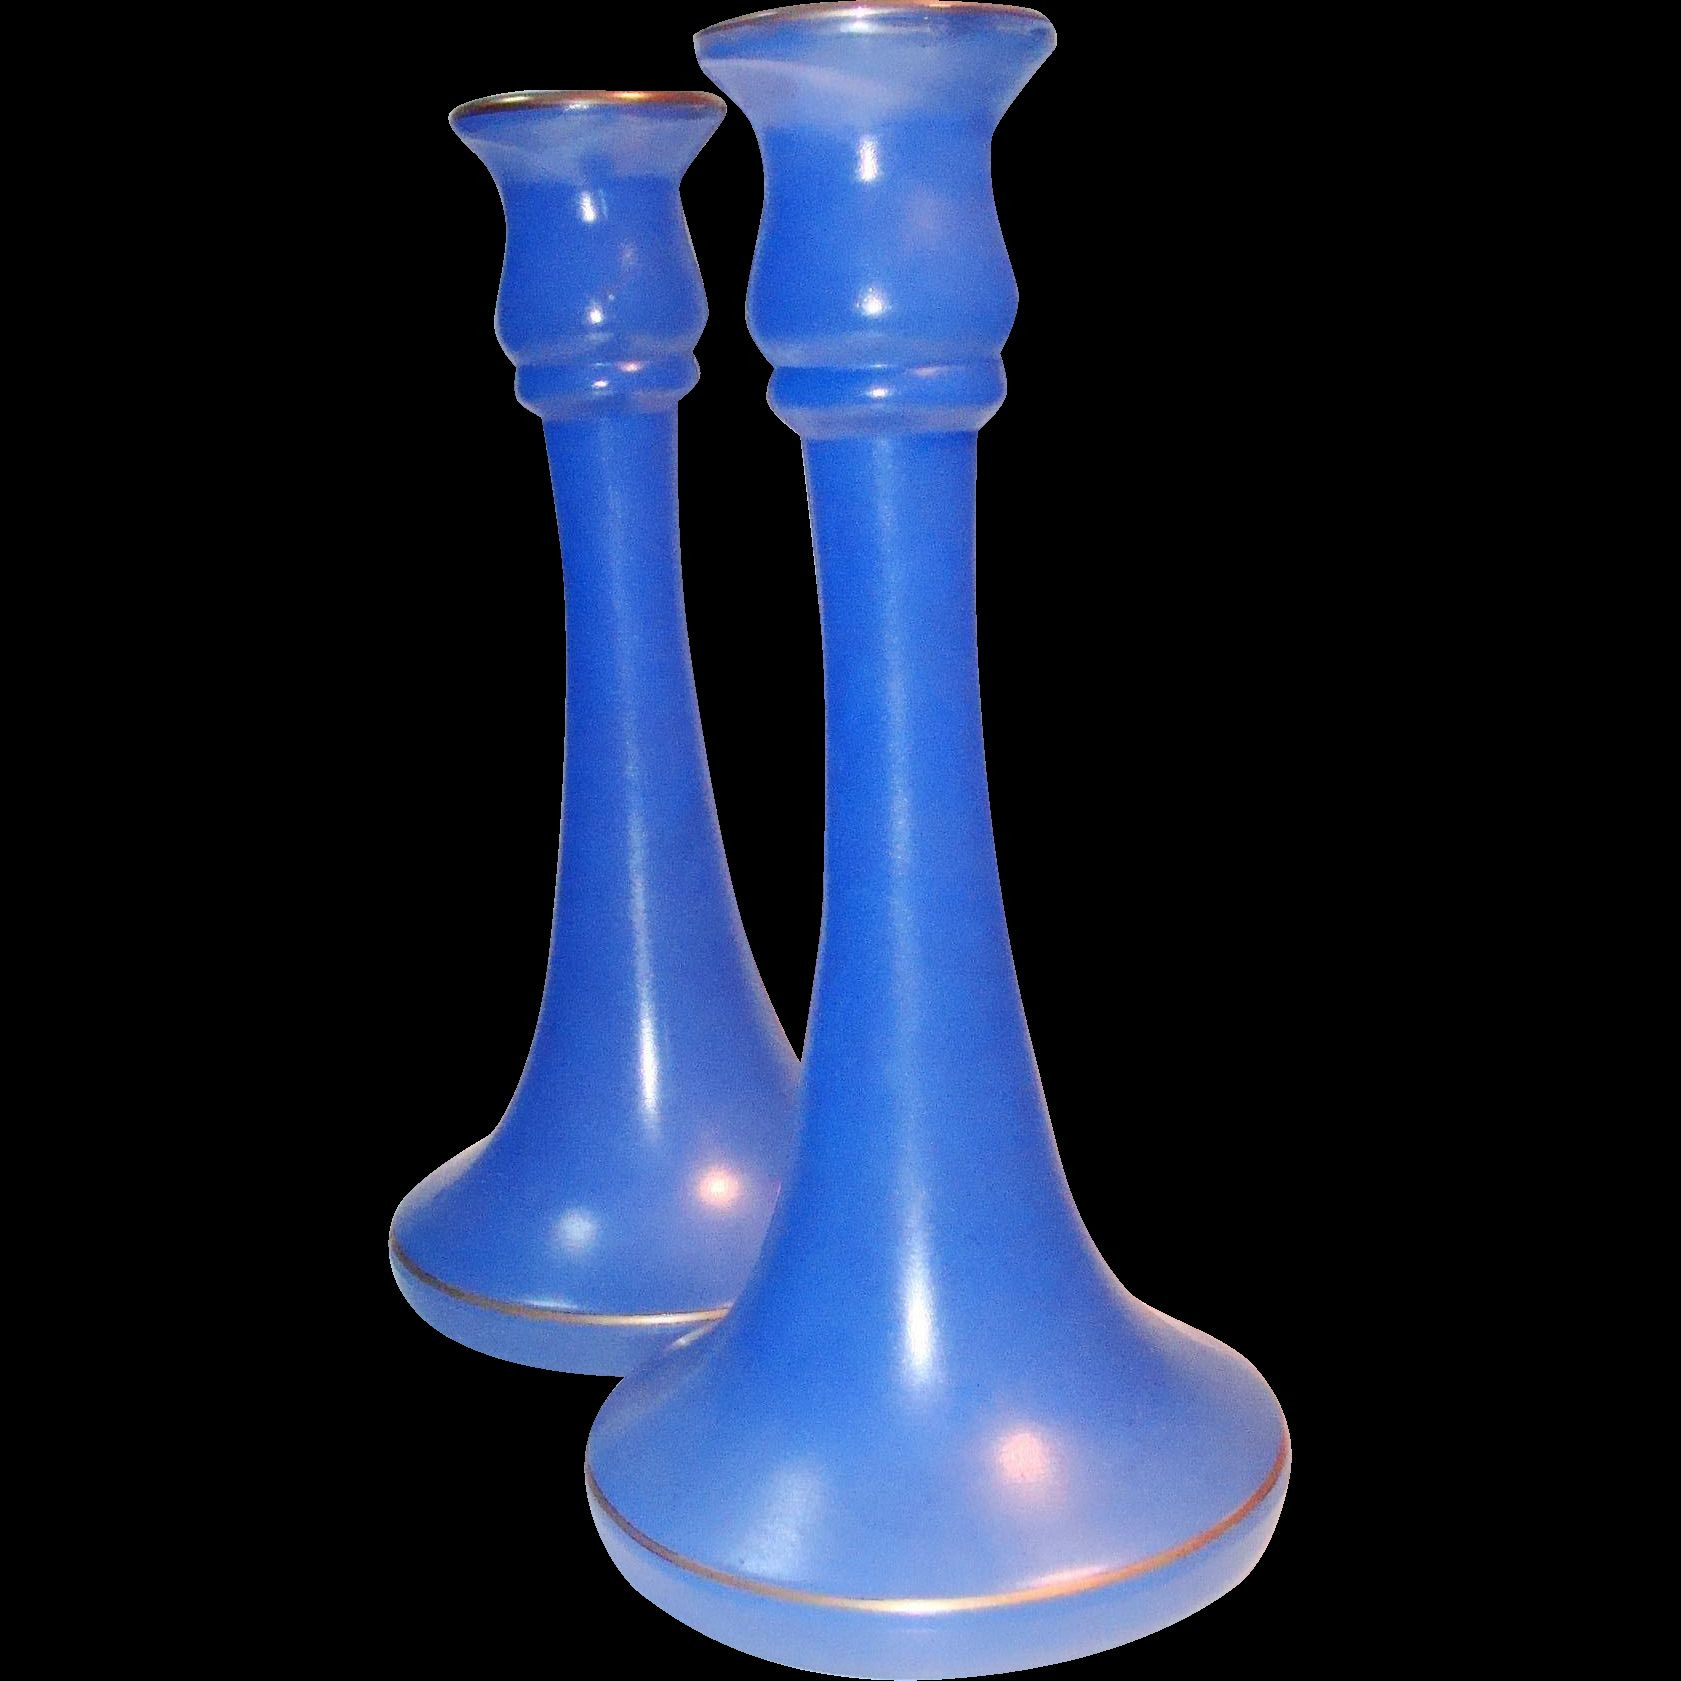 Cobalt Blue Vase Of Blue Crystal Vase Elegant Cool Blue Frosted Glass Candlesticks Pair Intended for Blue Crystal Vase Elegant Cool Blue Frosted Glass Candlesticks Pair 9